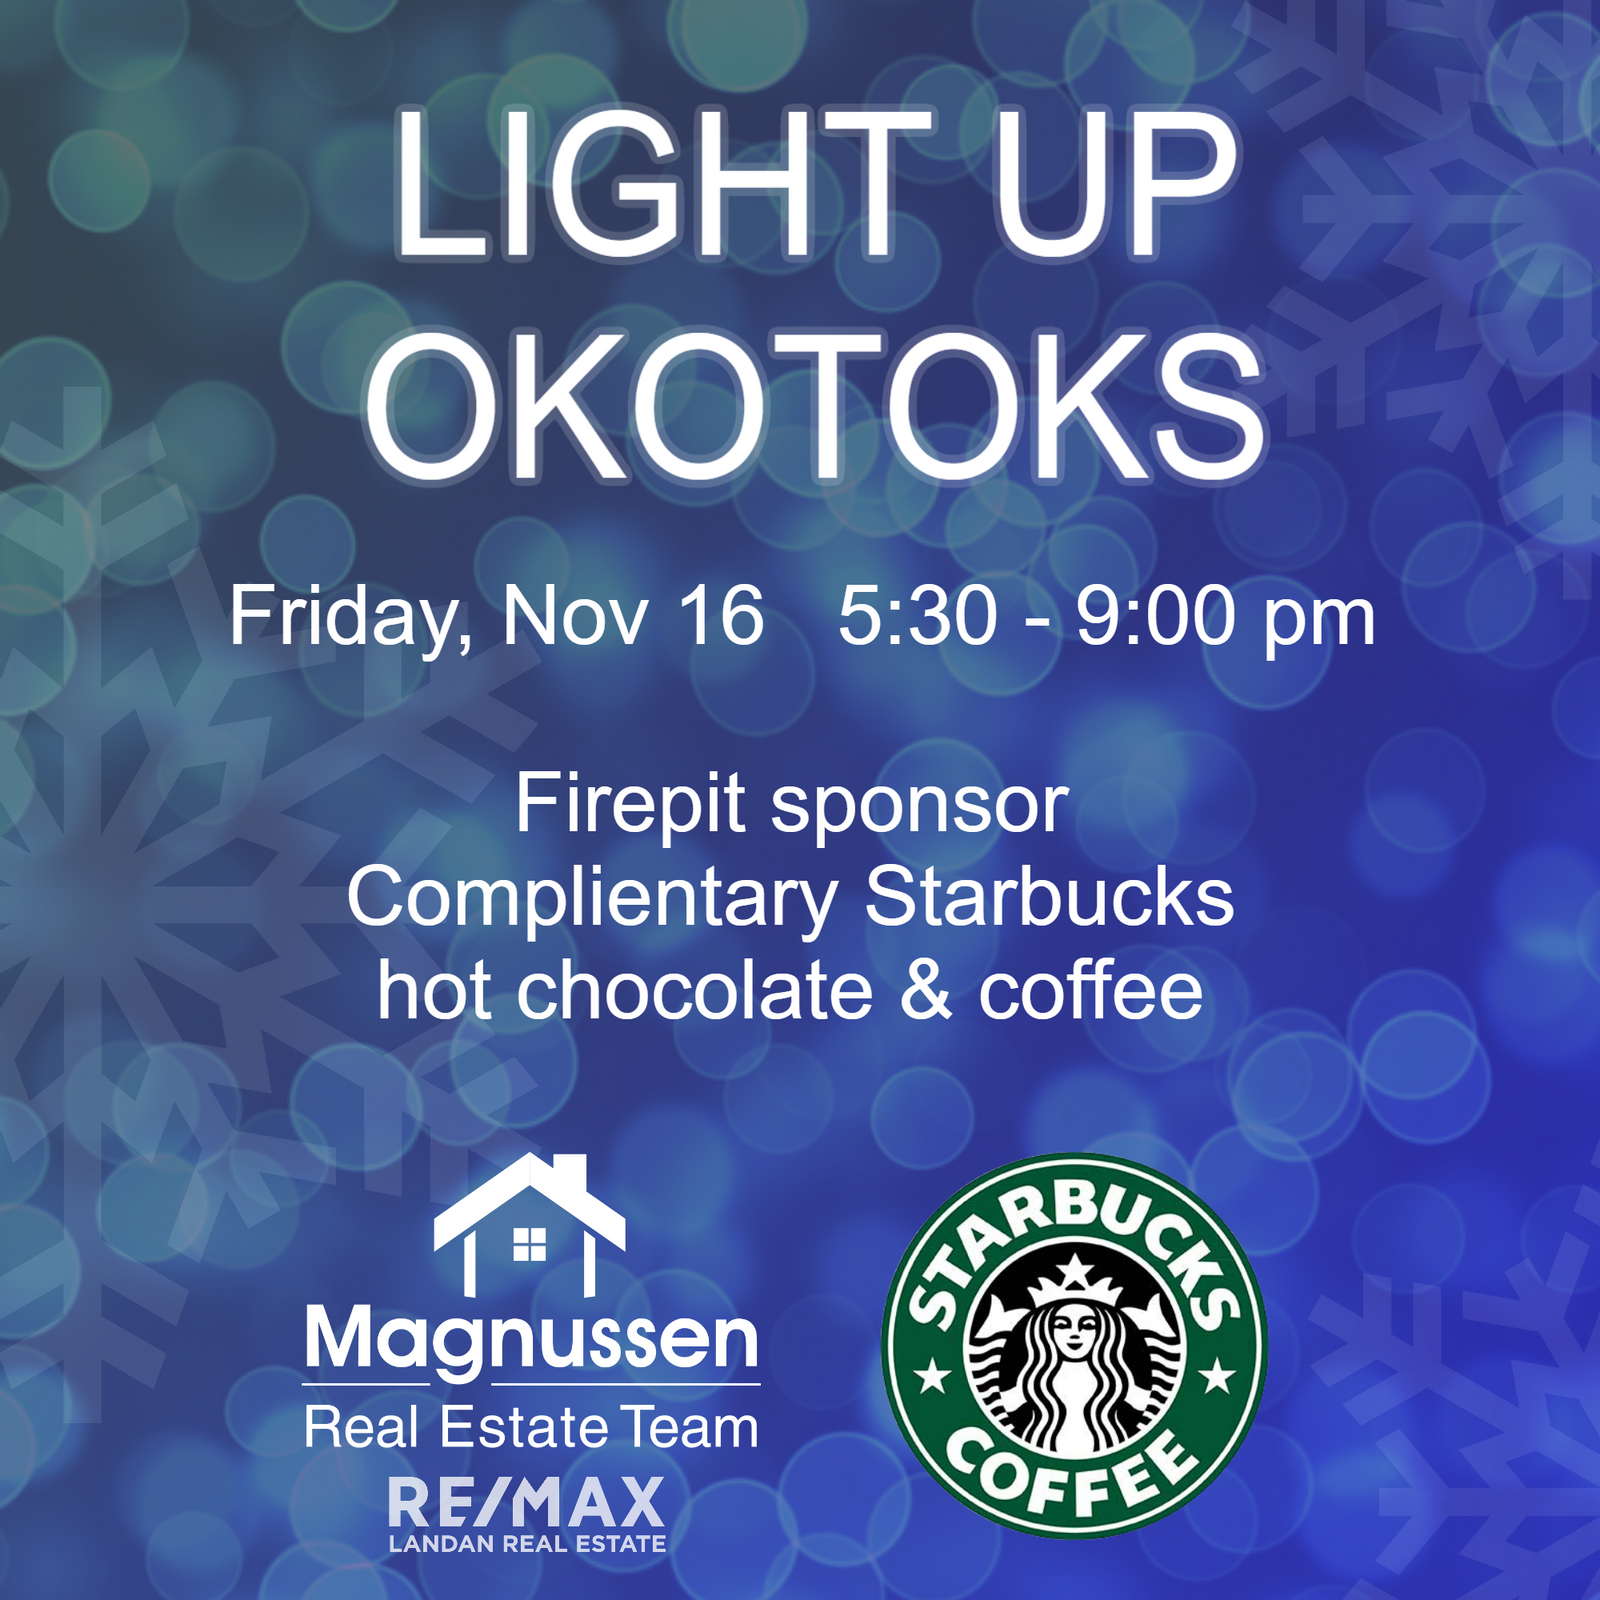 Light Up Okotoks - Nov 16